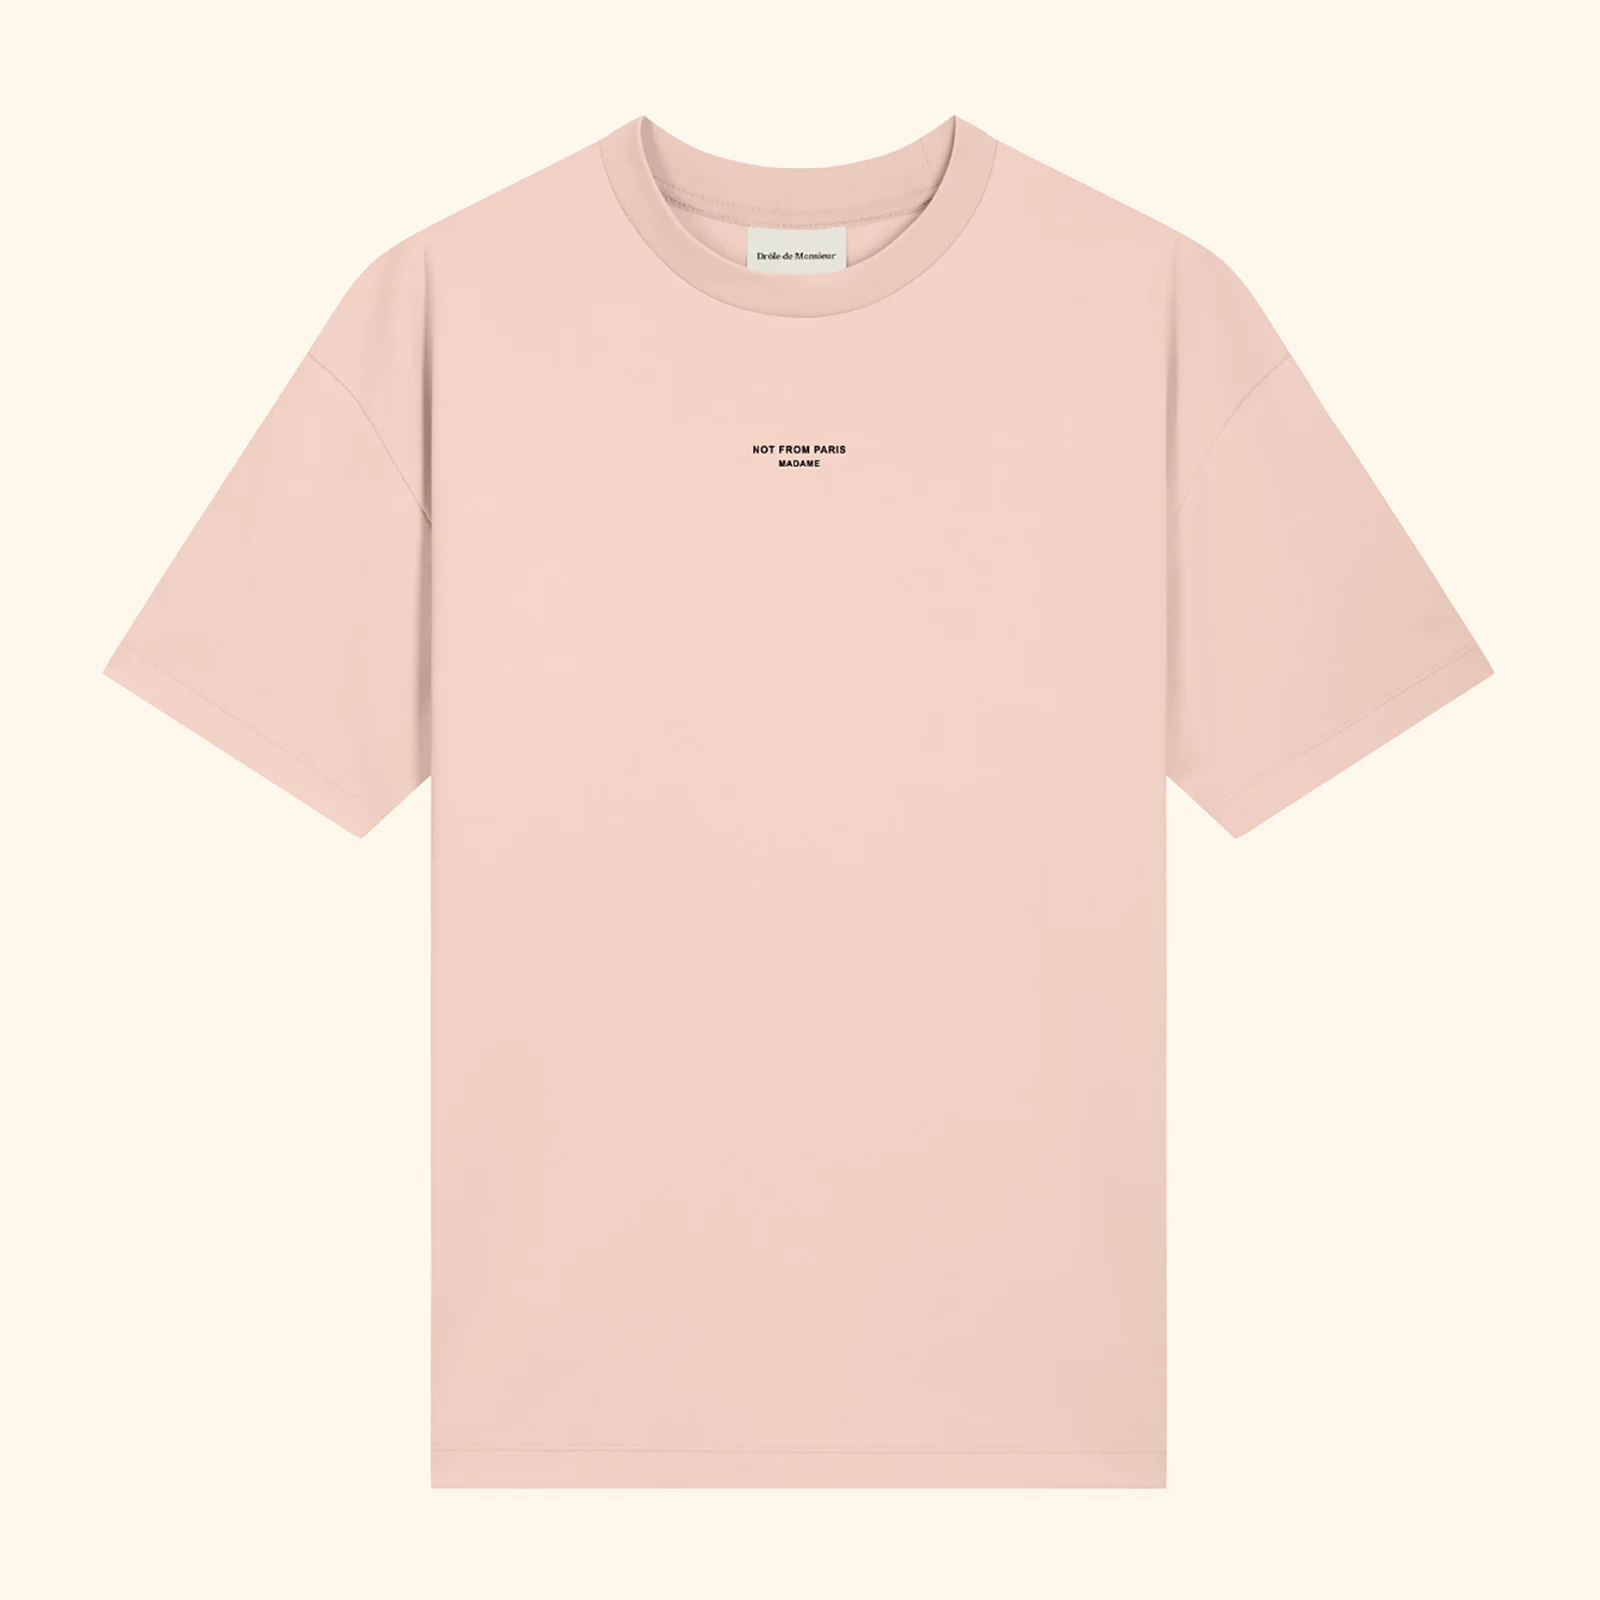 Drôle de Monsieur Men's Nfpm T-Shirt - Peach Image 1